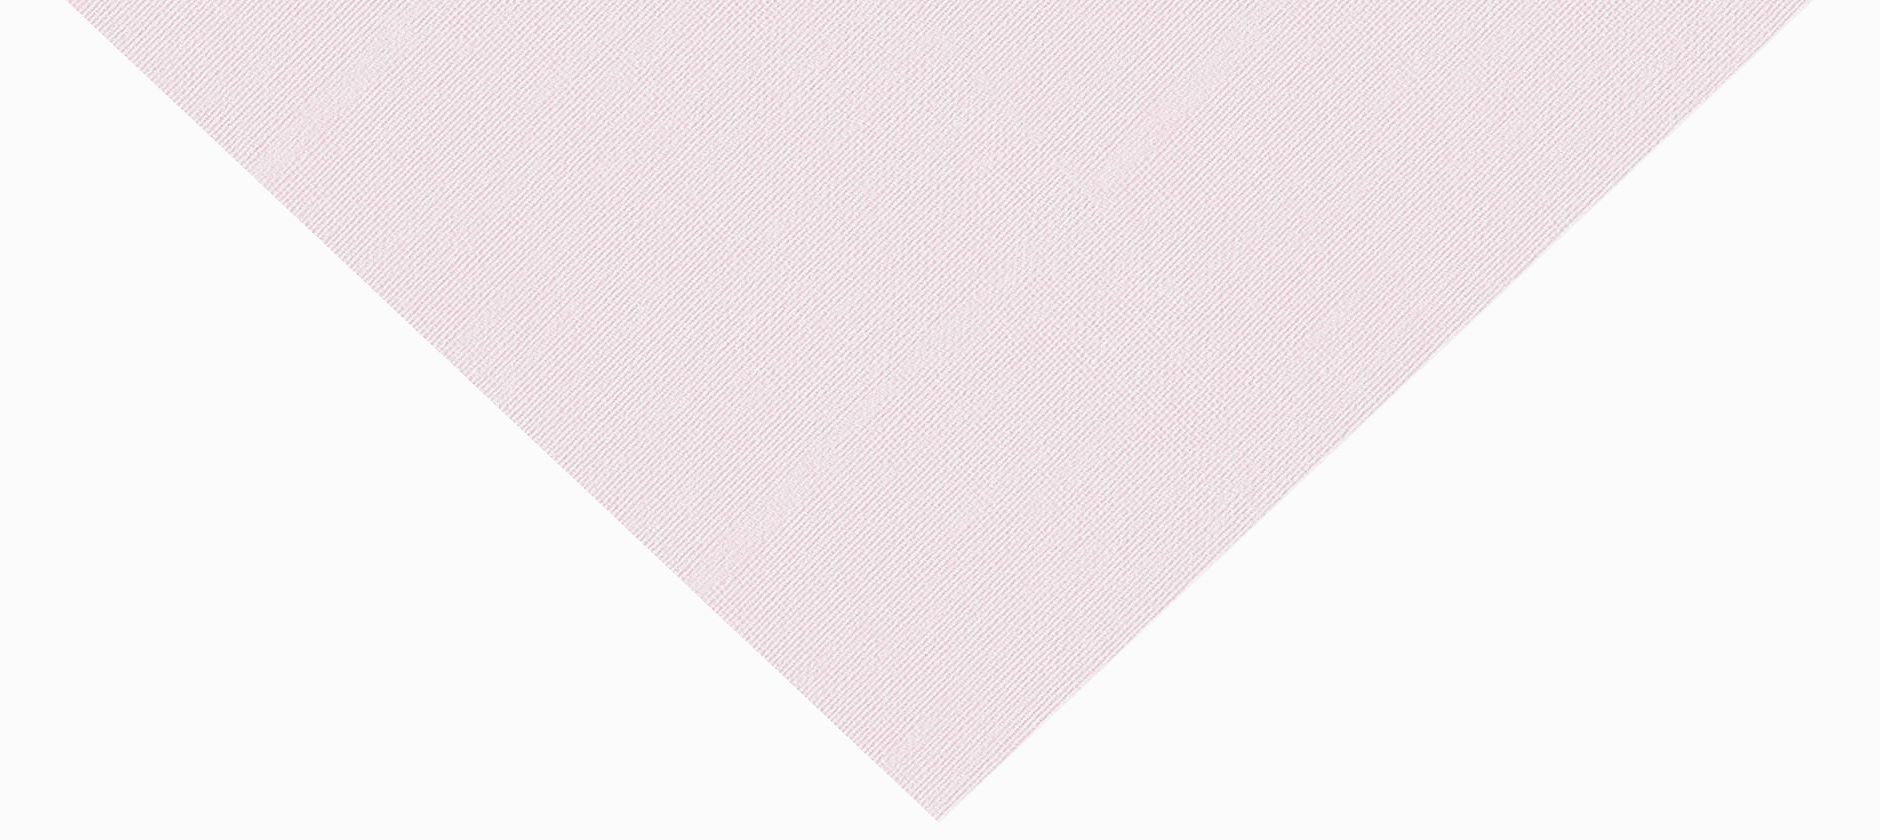 linen light pink